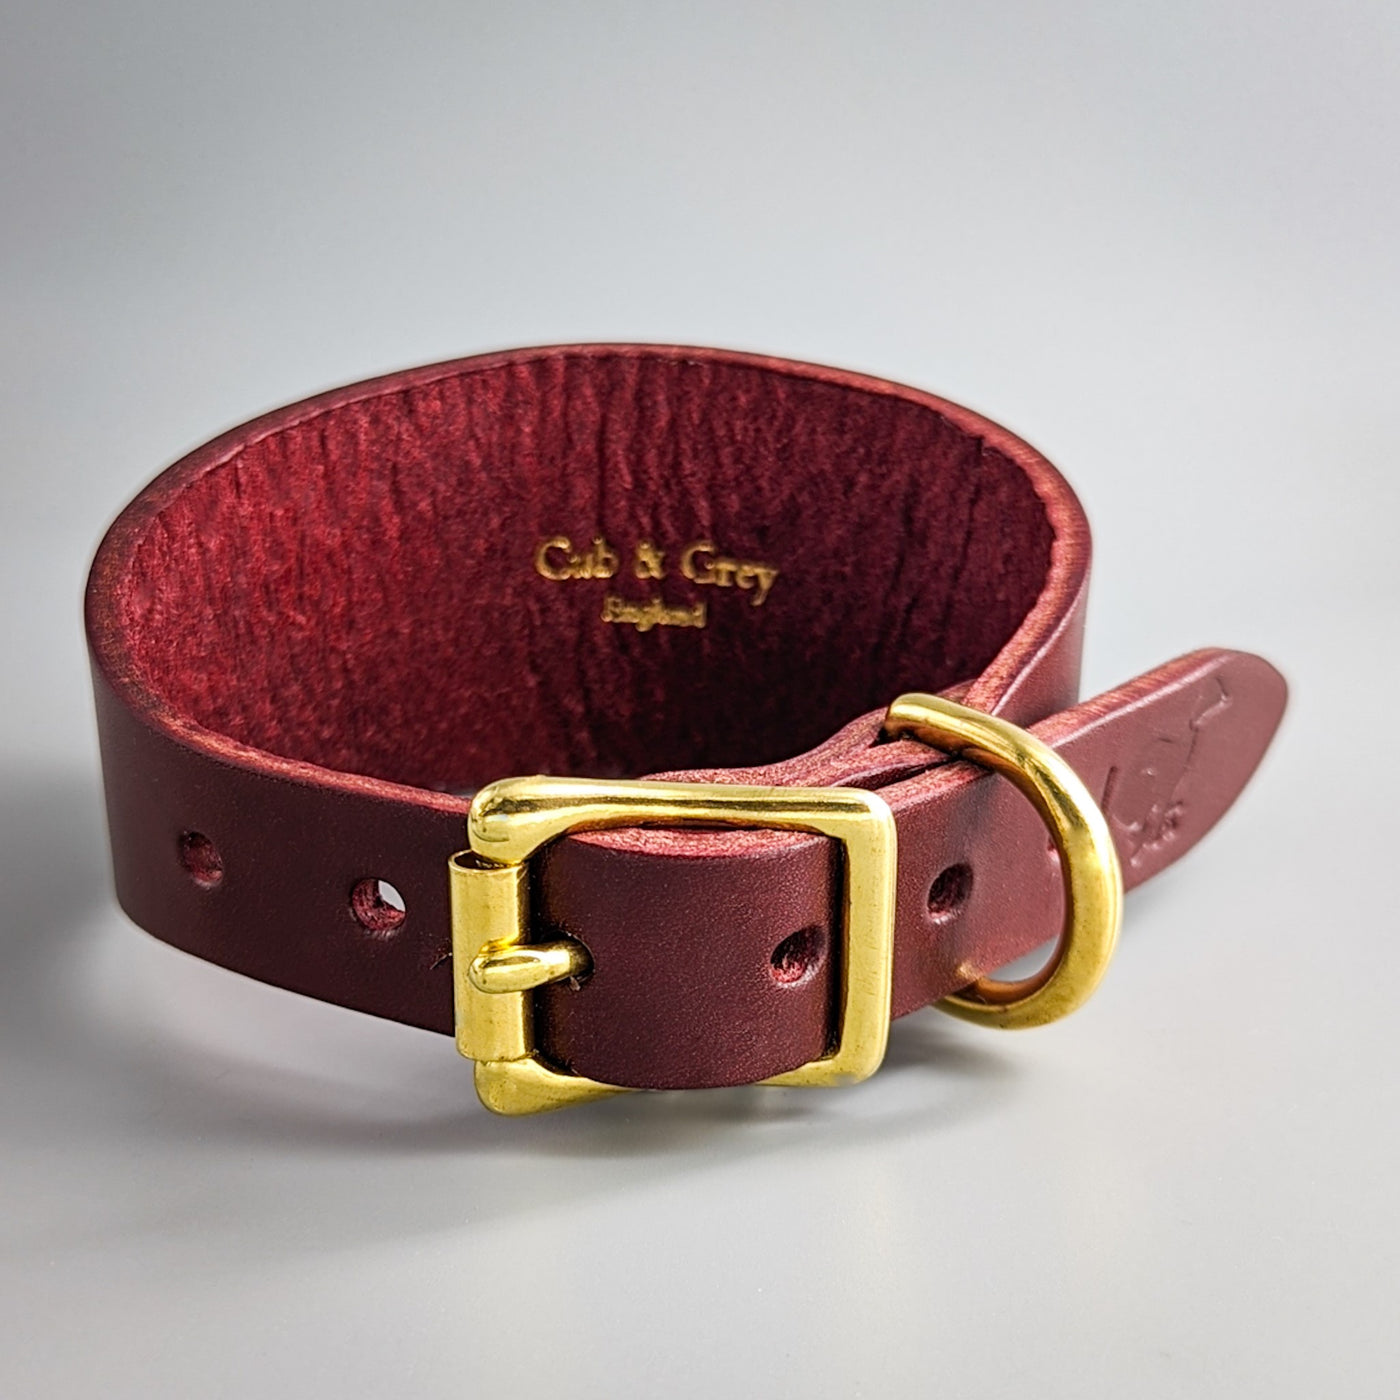 Leather Dog Collar for Hound (whippet, greyhound, lurcher) – British Burgundy